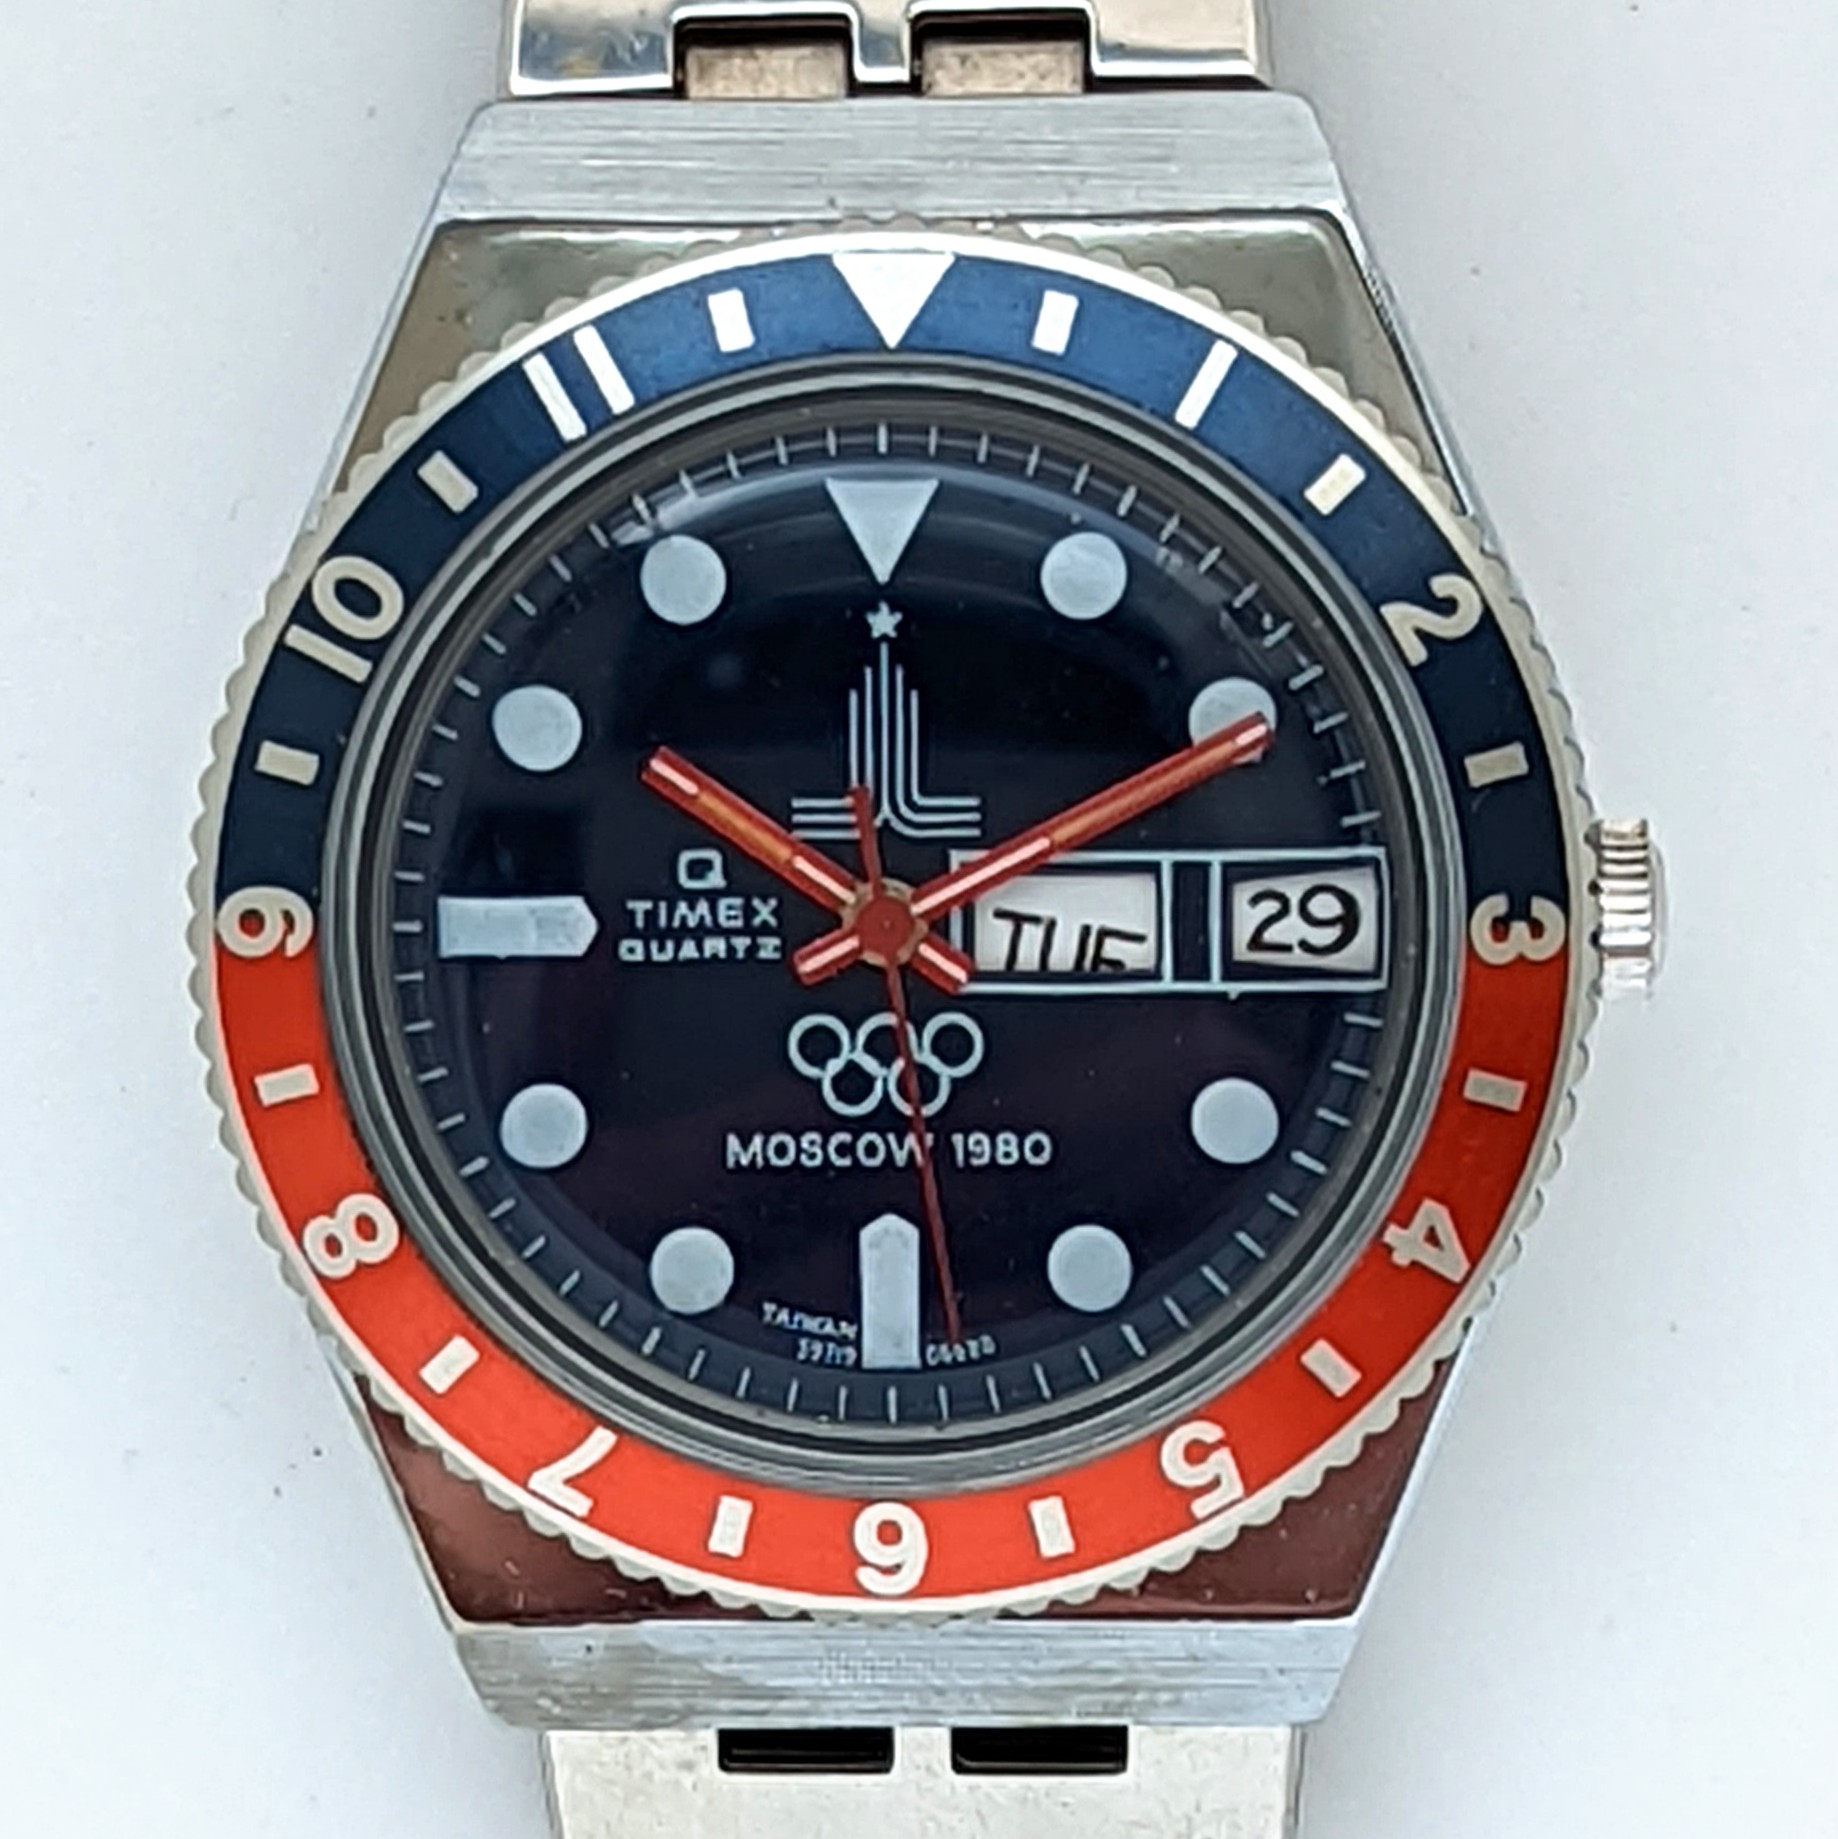 Timex Q 59719 06680 [1980] Olympic Watch